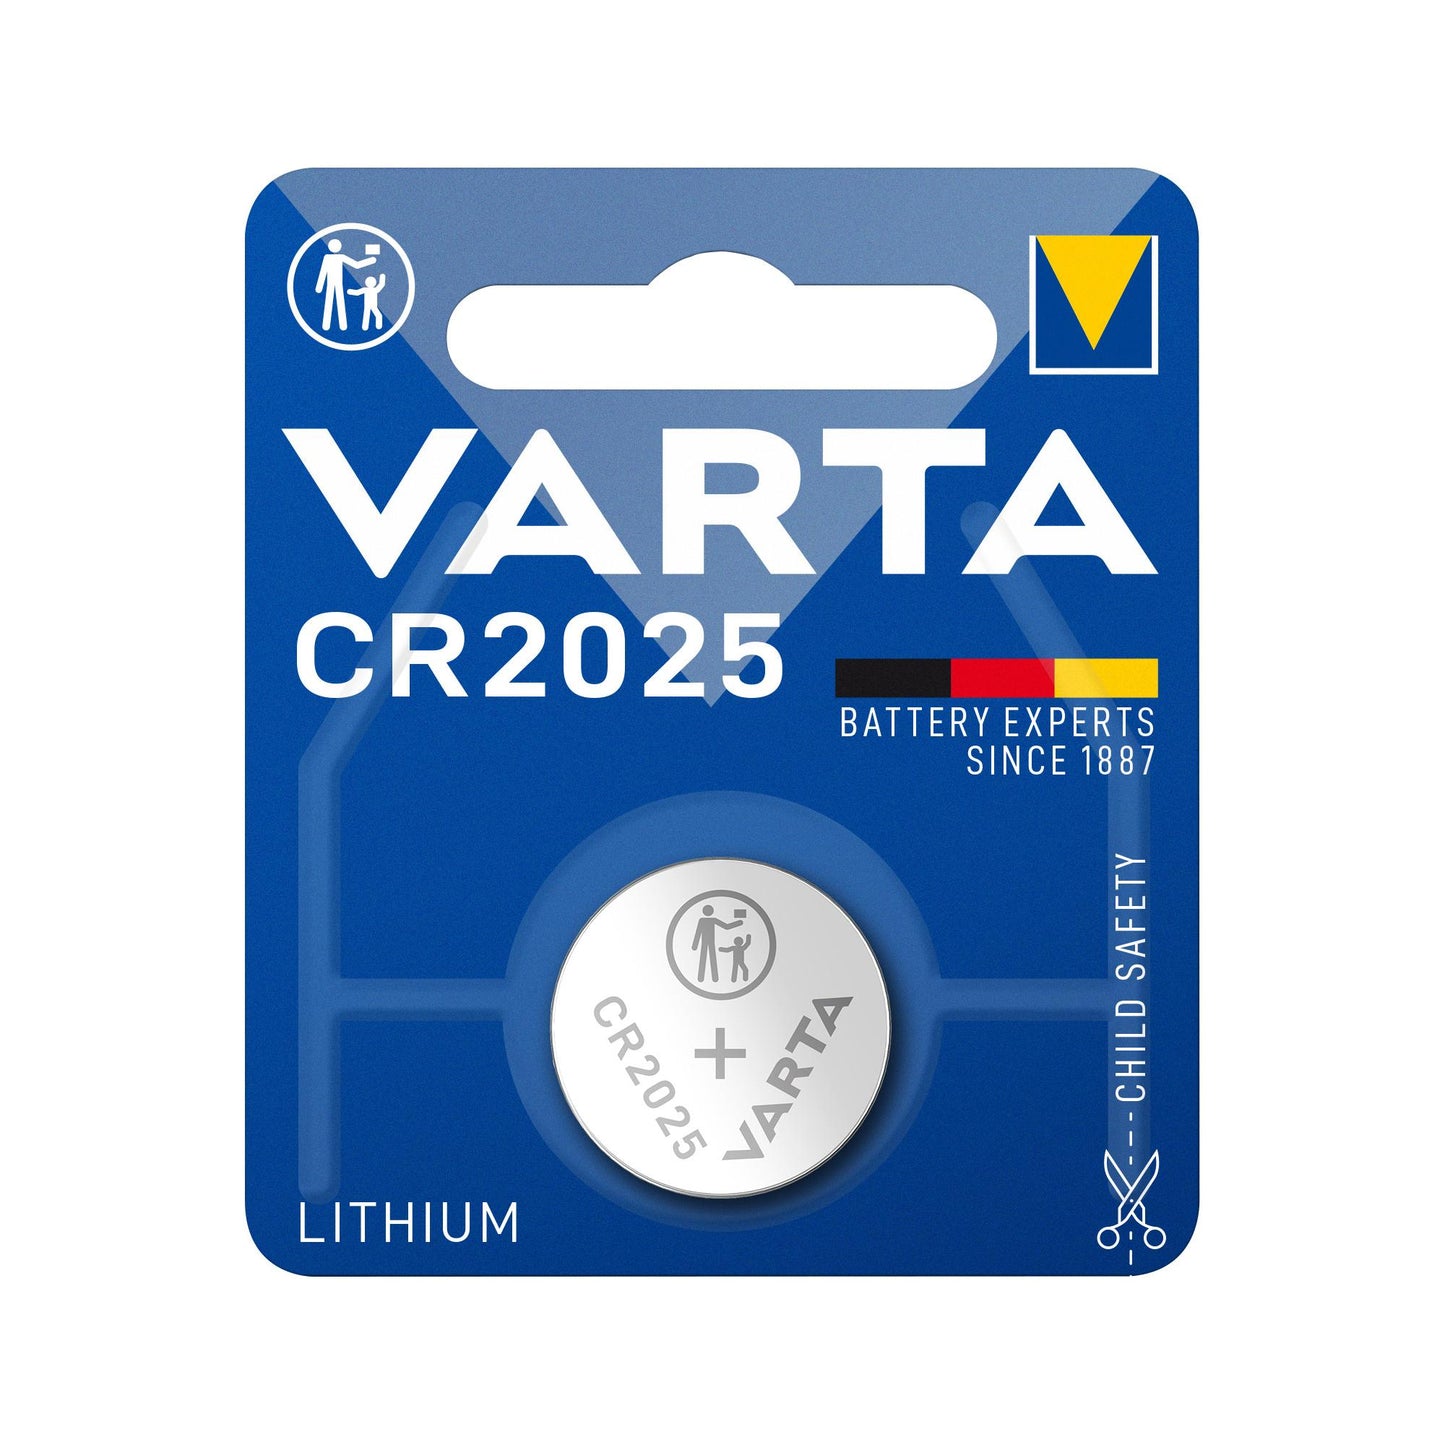 VARTA Batterie Lithium Knopfzelle CR2025, 3V Electronics, Retail Blister (1-Pack)